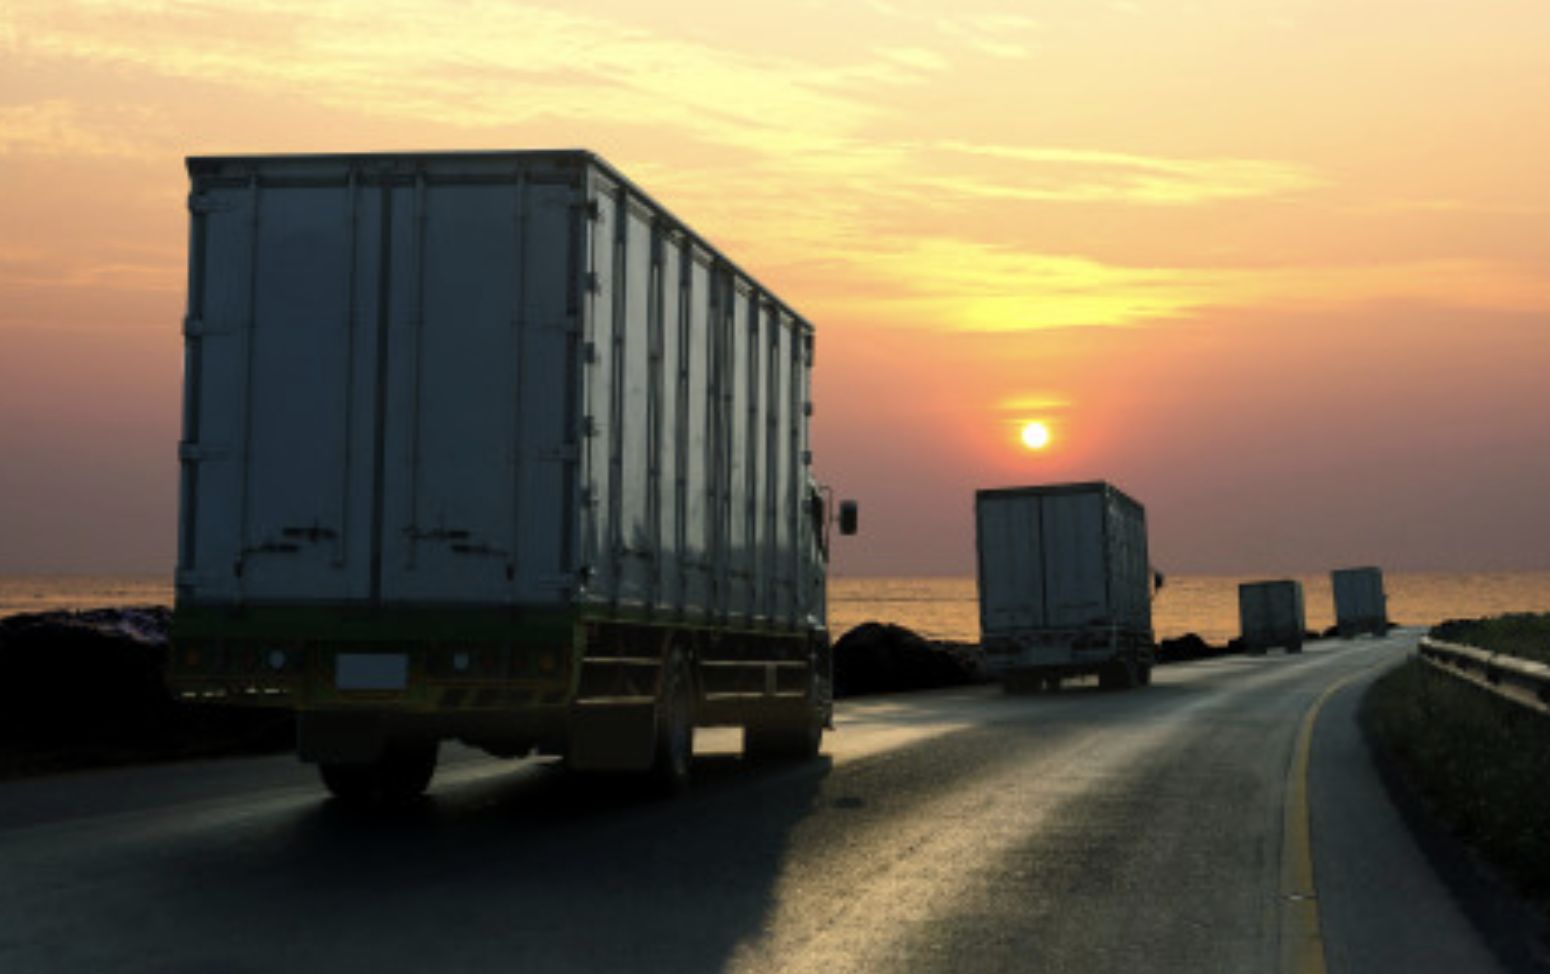 El mercado nacional de carga de camiones de Estados Unidos en 2021 fue de aproximadamente 732,000 millones de dólares, según Statista. The U.S. domestic truckload freight market in 2021 was approximately $732 billion, according to Statista.